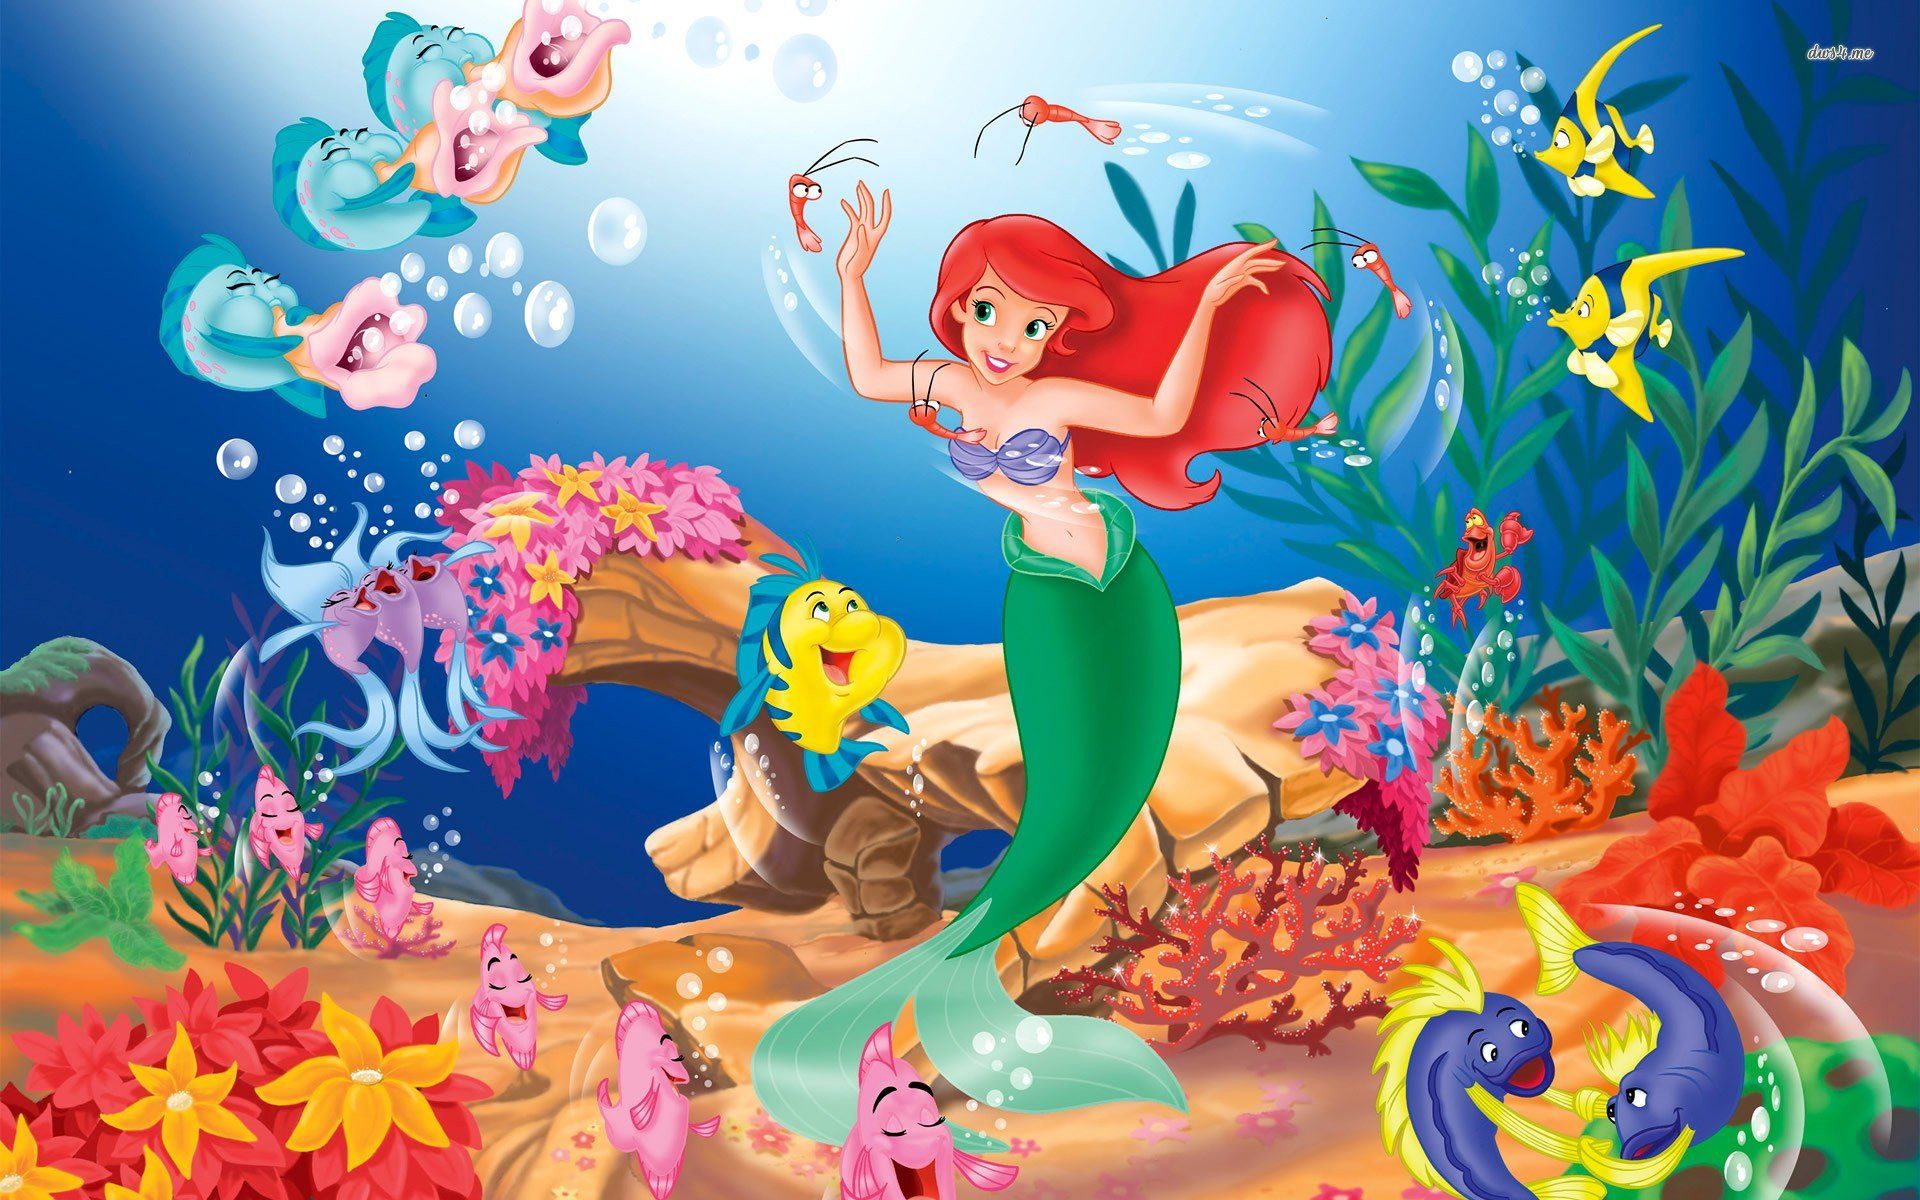 Fondos de pantalla de La Sirenita, Wallpapers hd gratis de Ariel